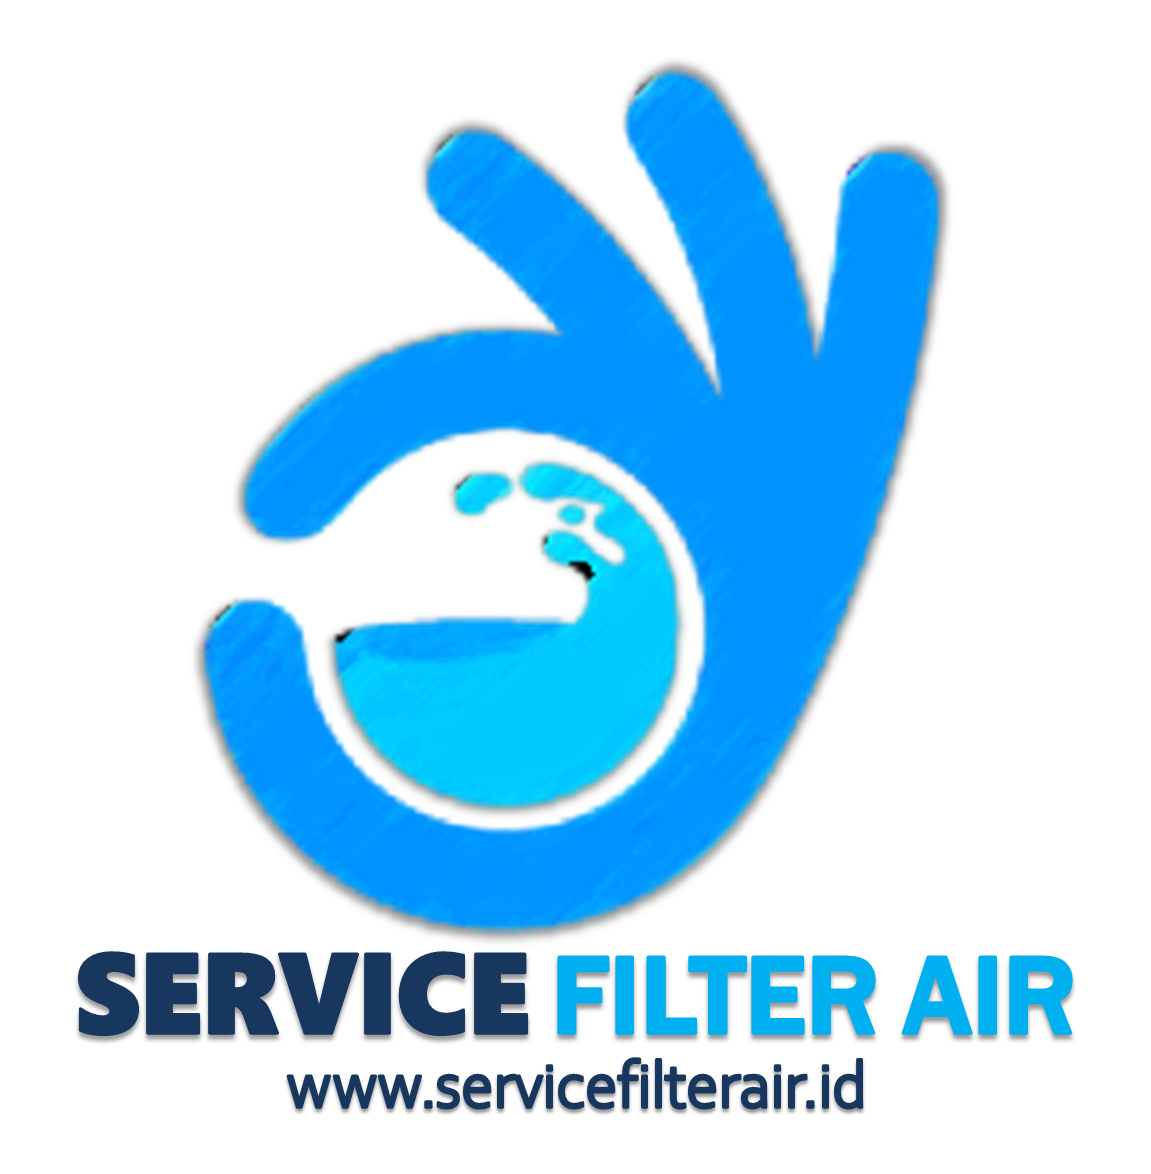 SERVICE FILTER AIR | servicefilterair.id